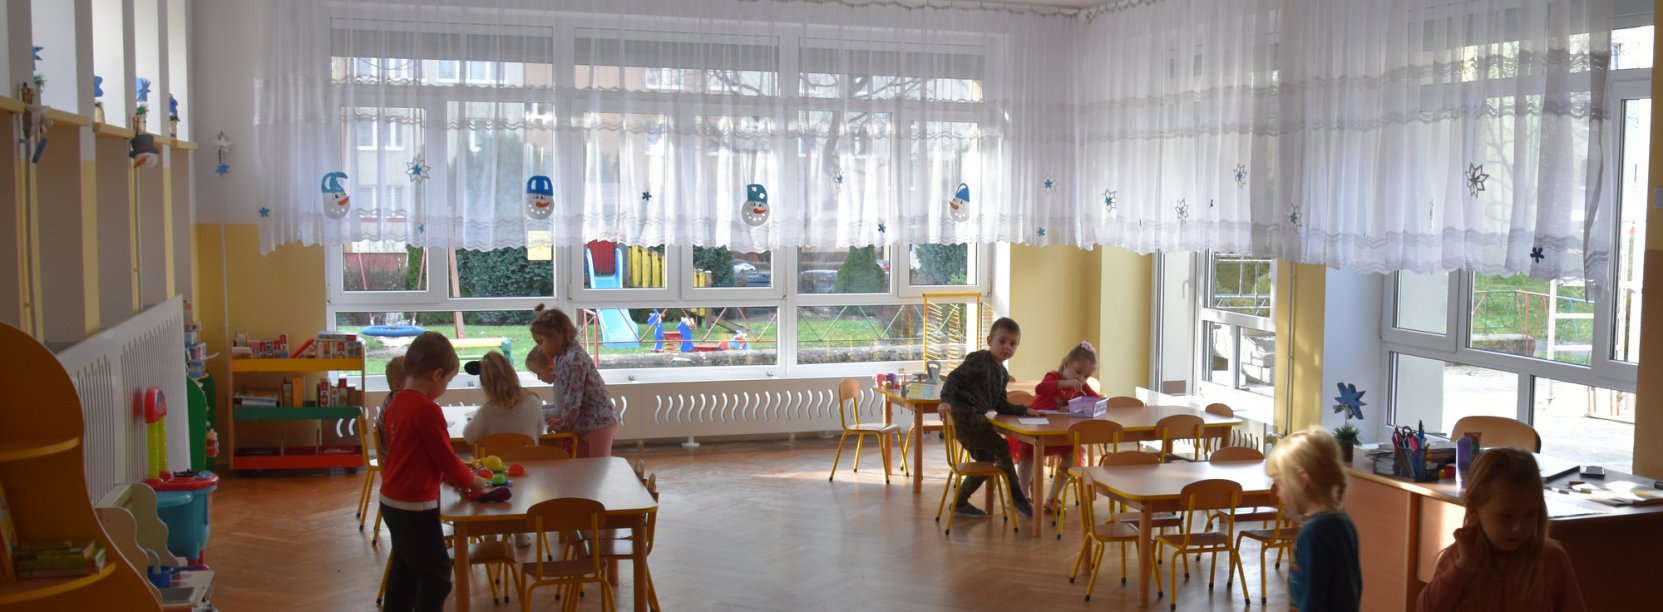 Sala przedszkolna, bawiące się dzieci